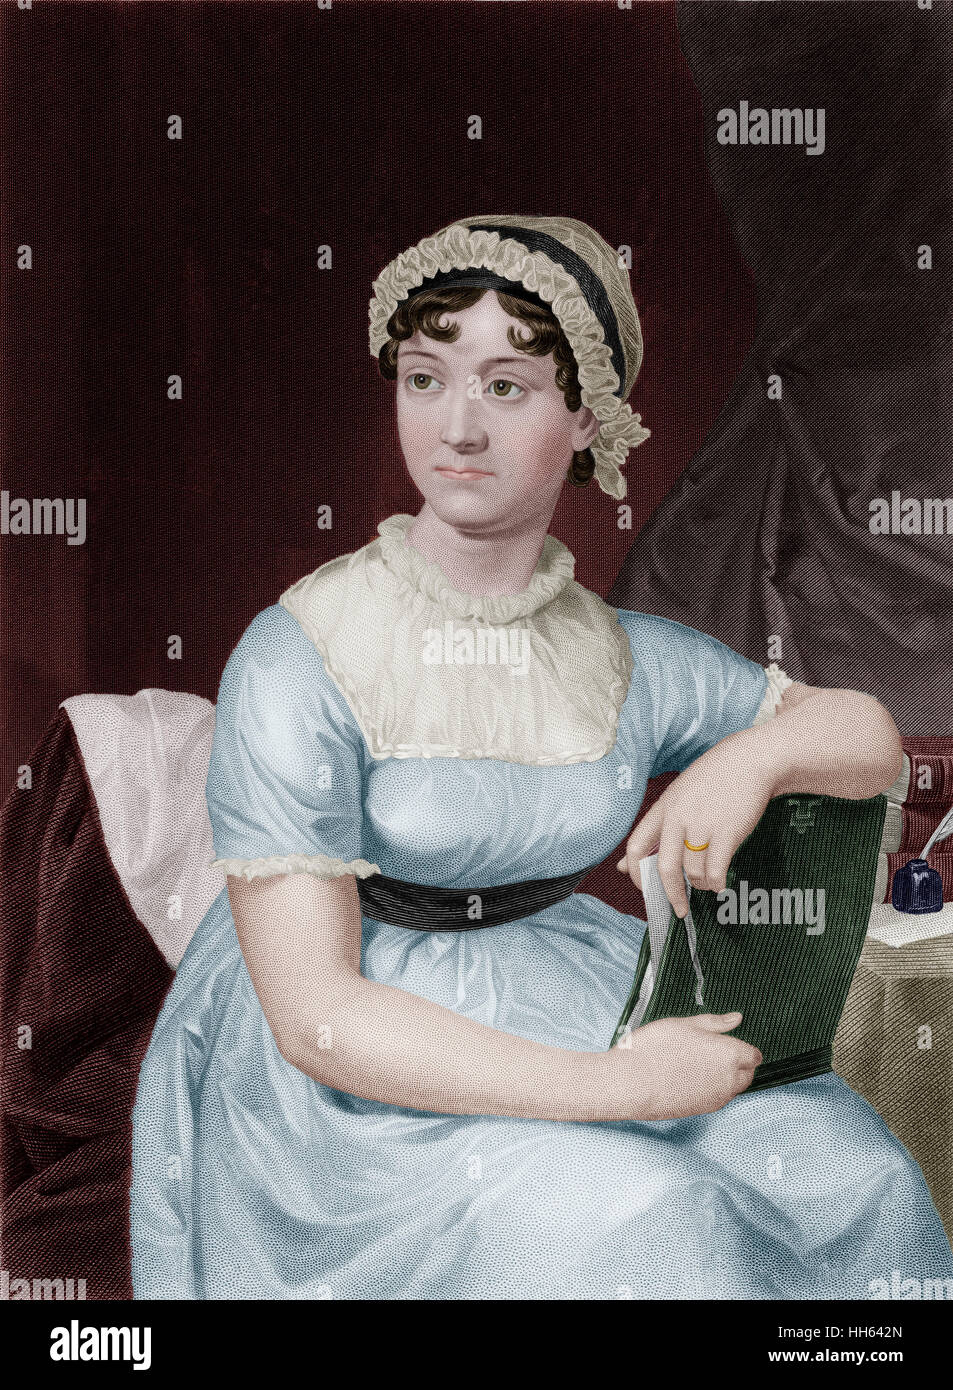 Jane Austen (1775-1817) - romancier anglais. Banque D'Images